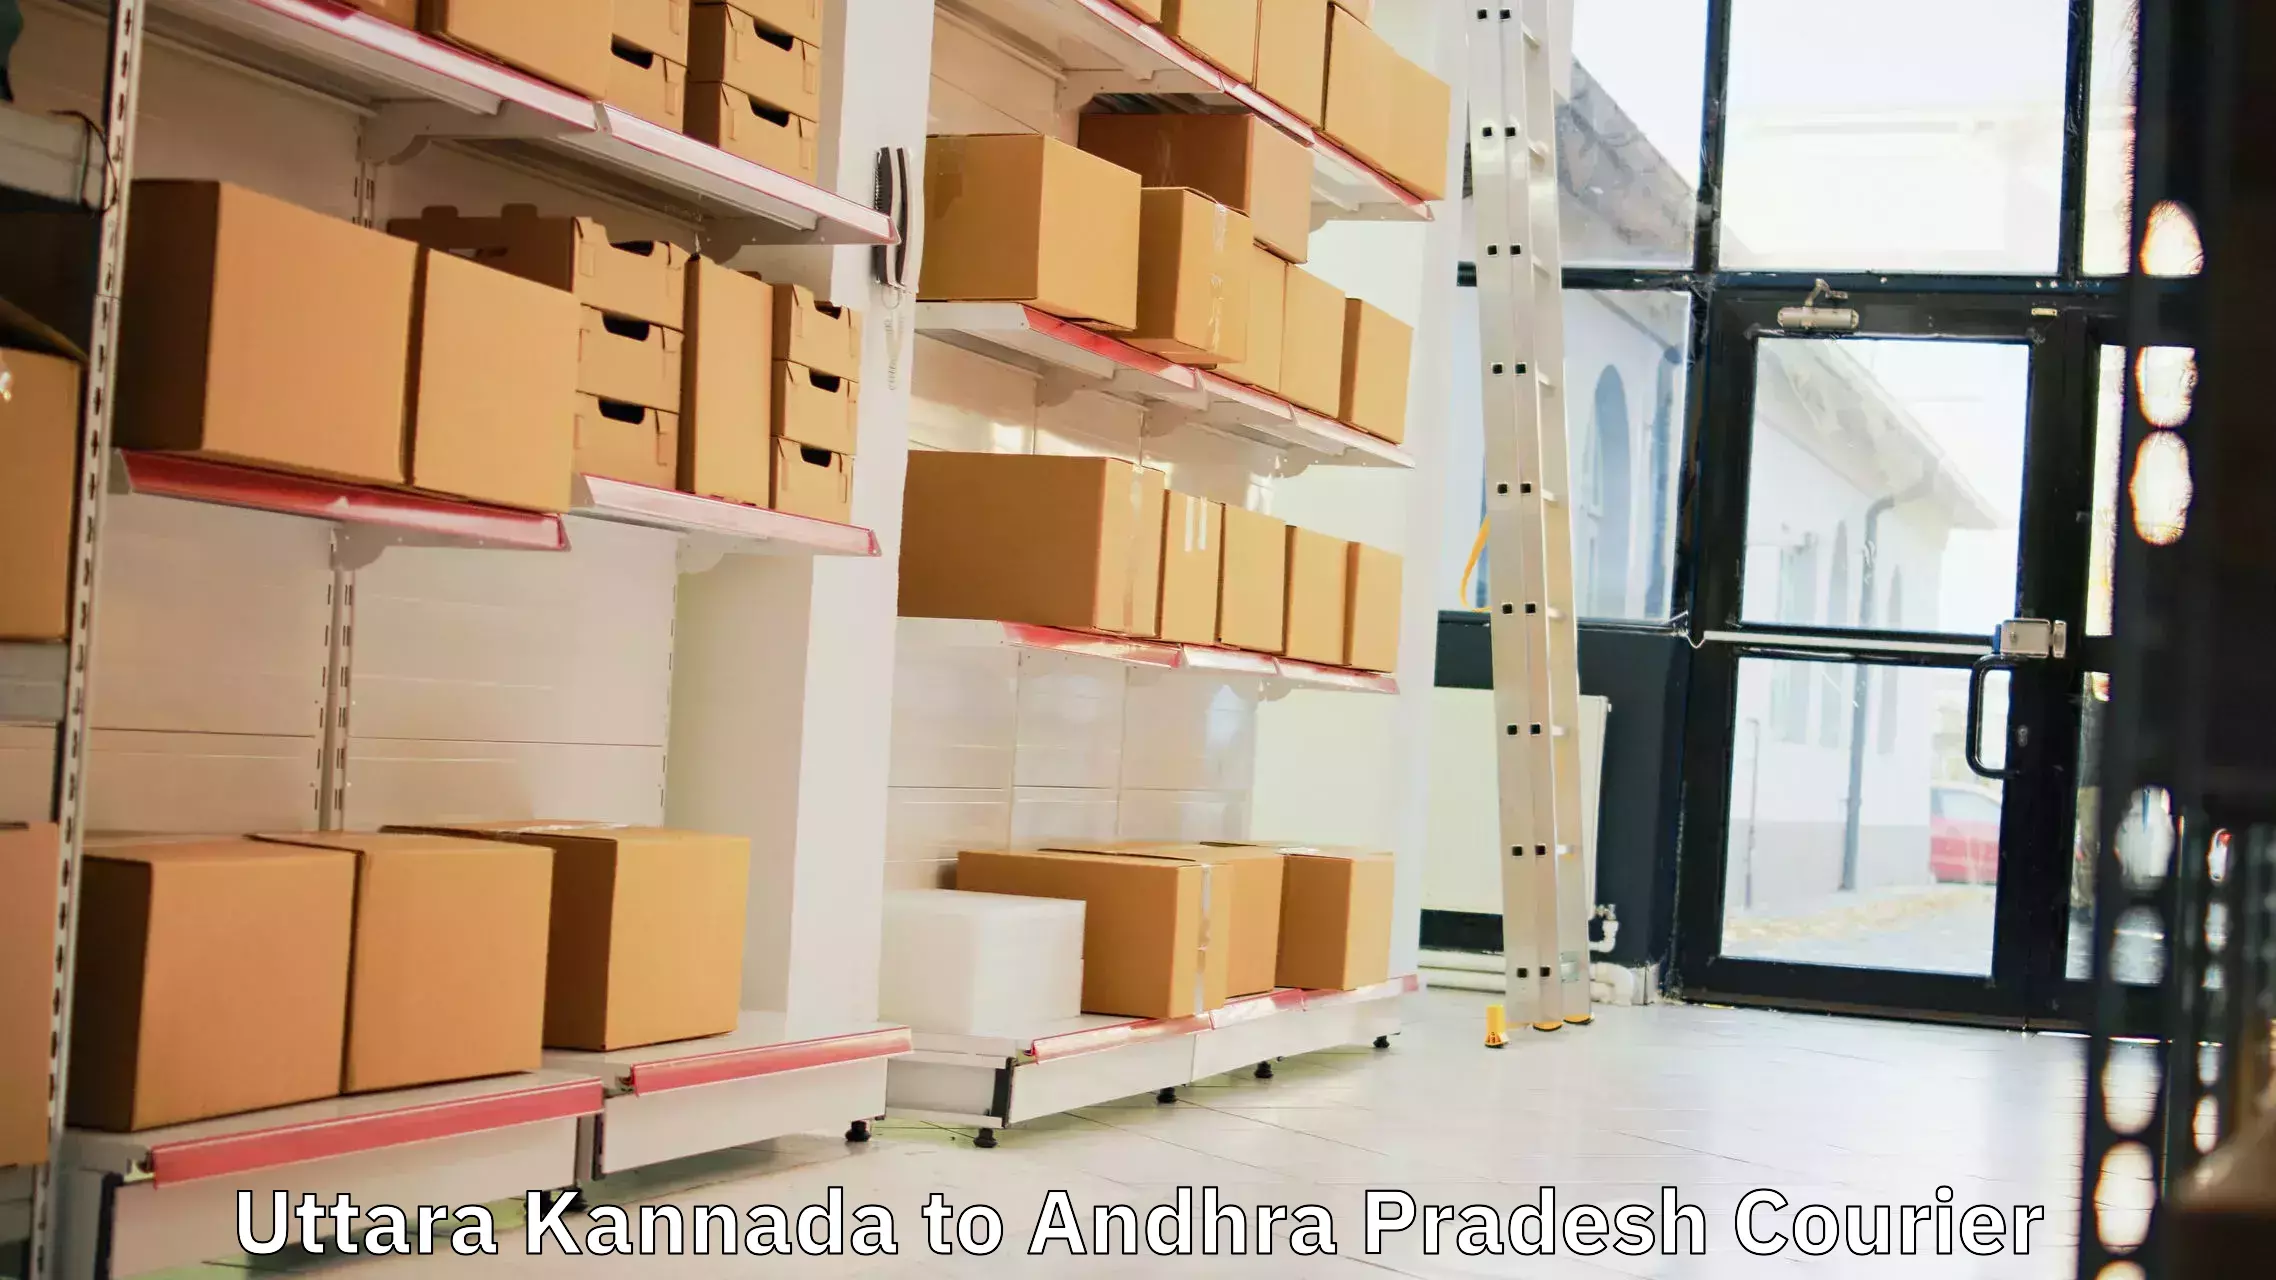 Efficient cargo handling Uttara Kannada to Andhra Pradesh